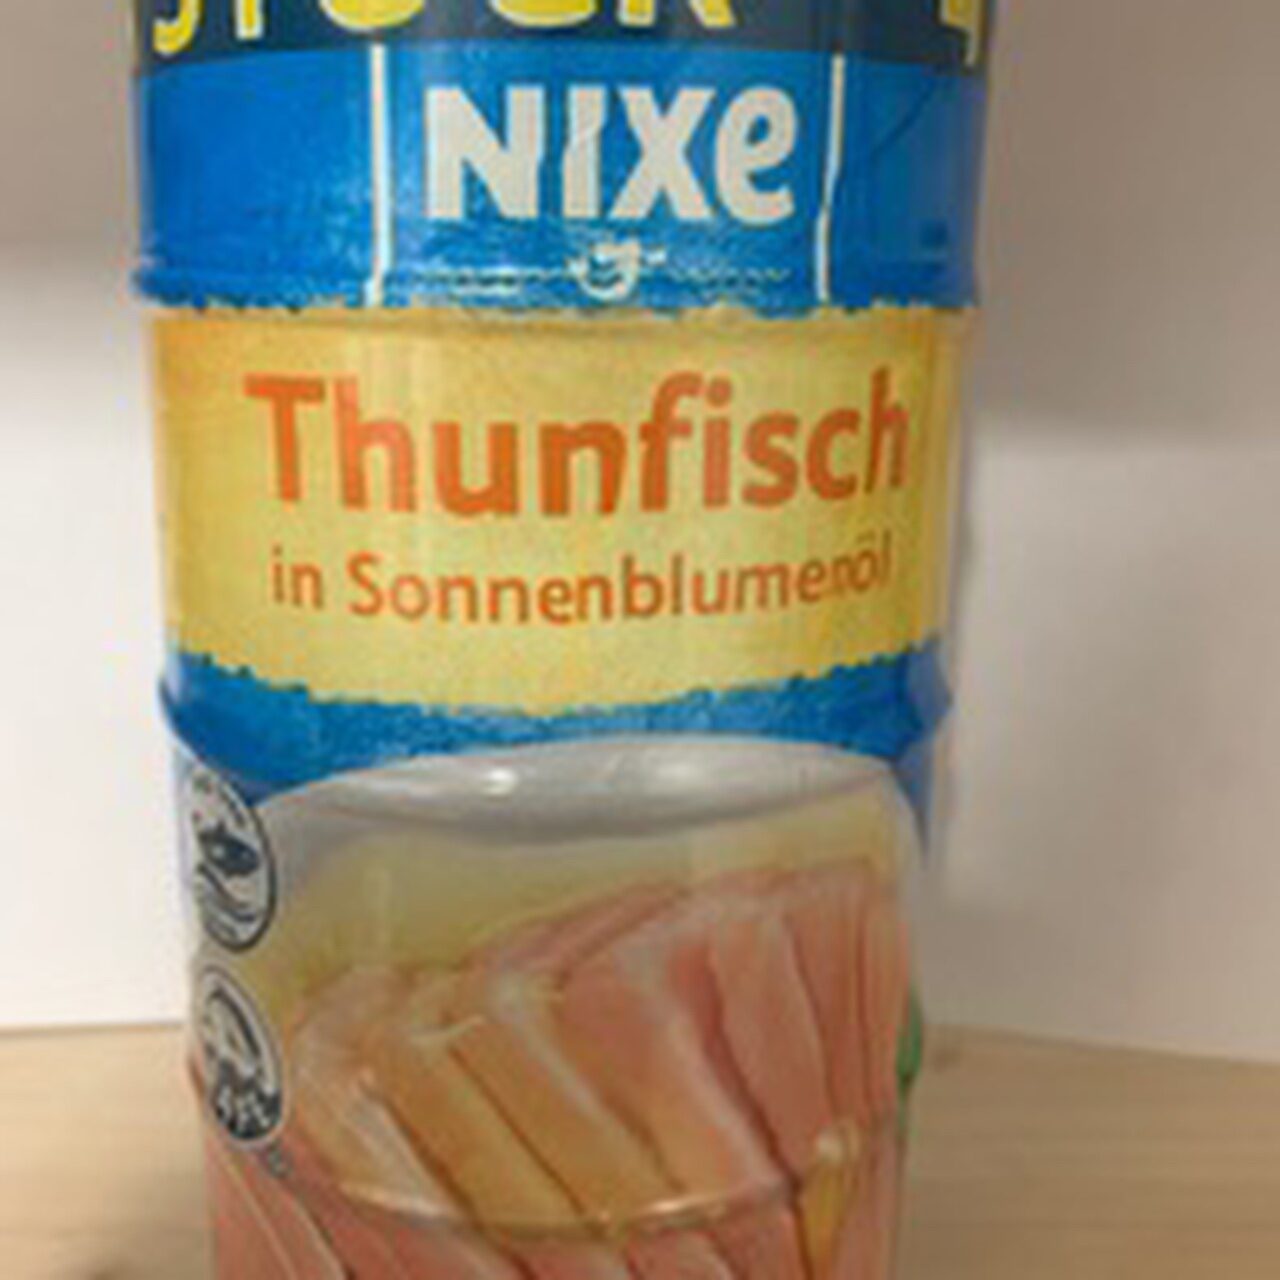 Thunfisch in Sonnenblumen Öl - Product - de